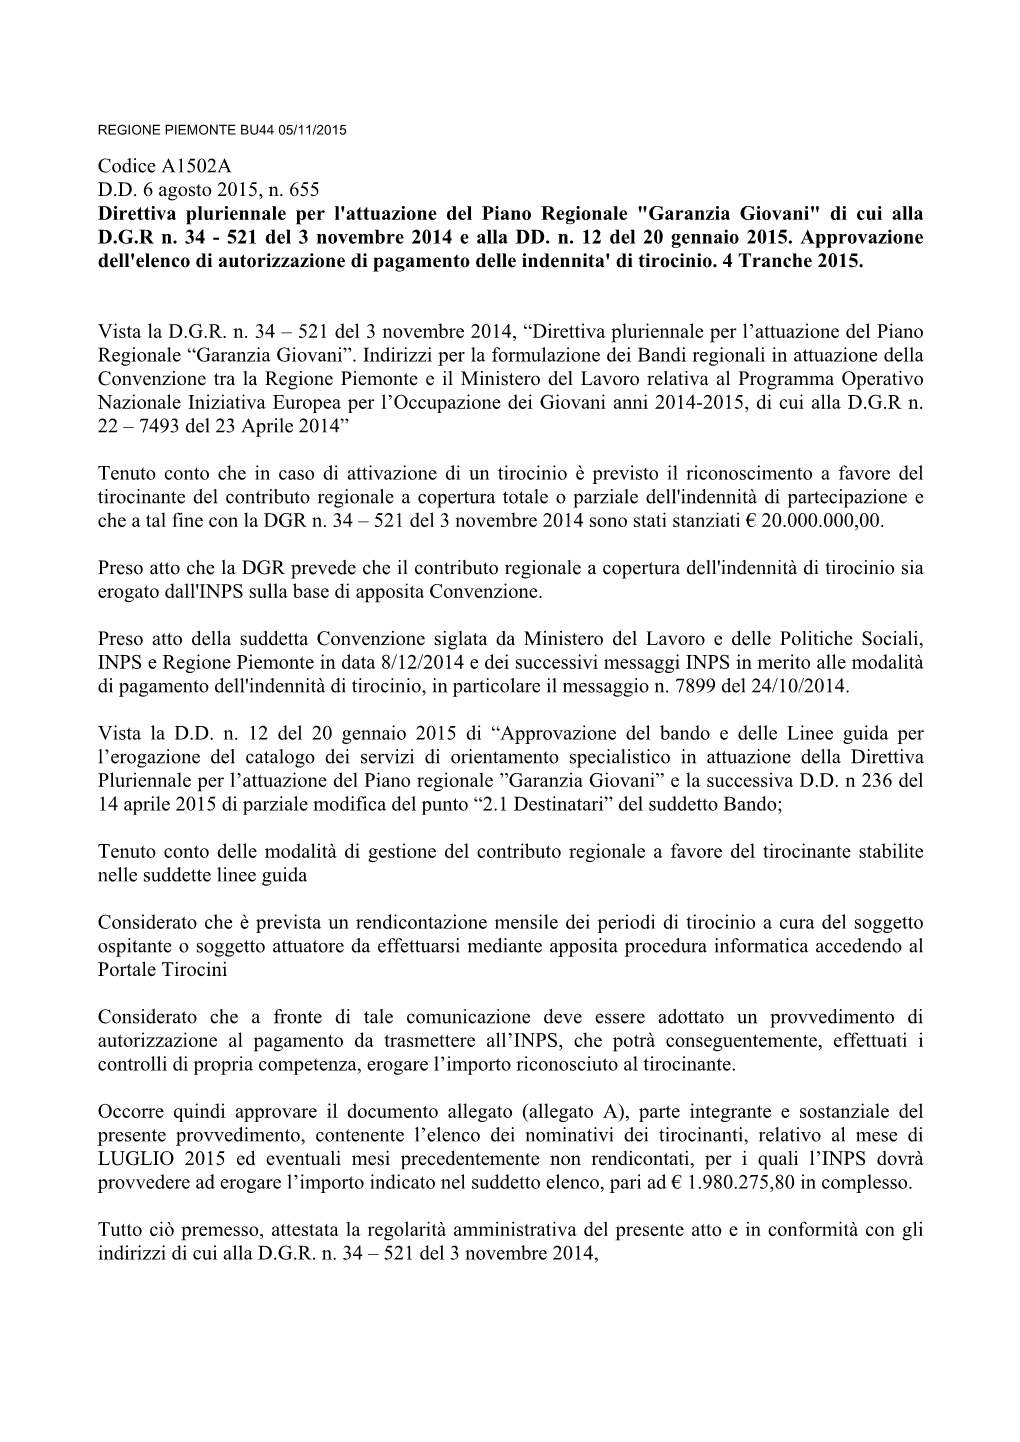 Codice A1502A D.D. 6 Agosto 2015, N. 655 Direttiva Pluriennale Per L'attuazione Del Piano Regionale "Garanzia Giovani" Di Cui Alla D.G.R N